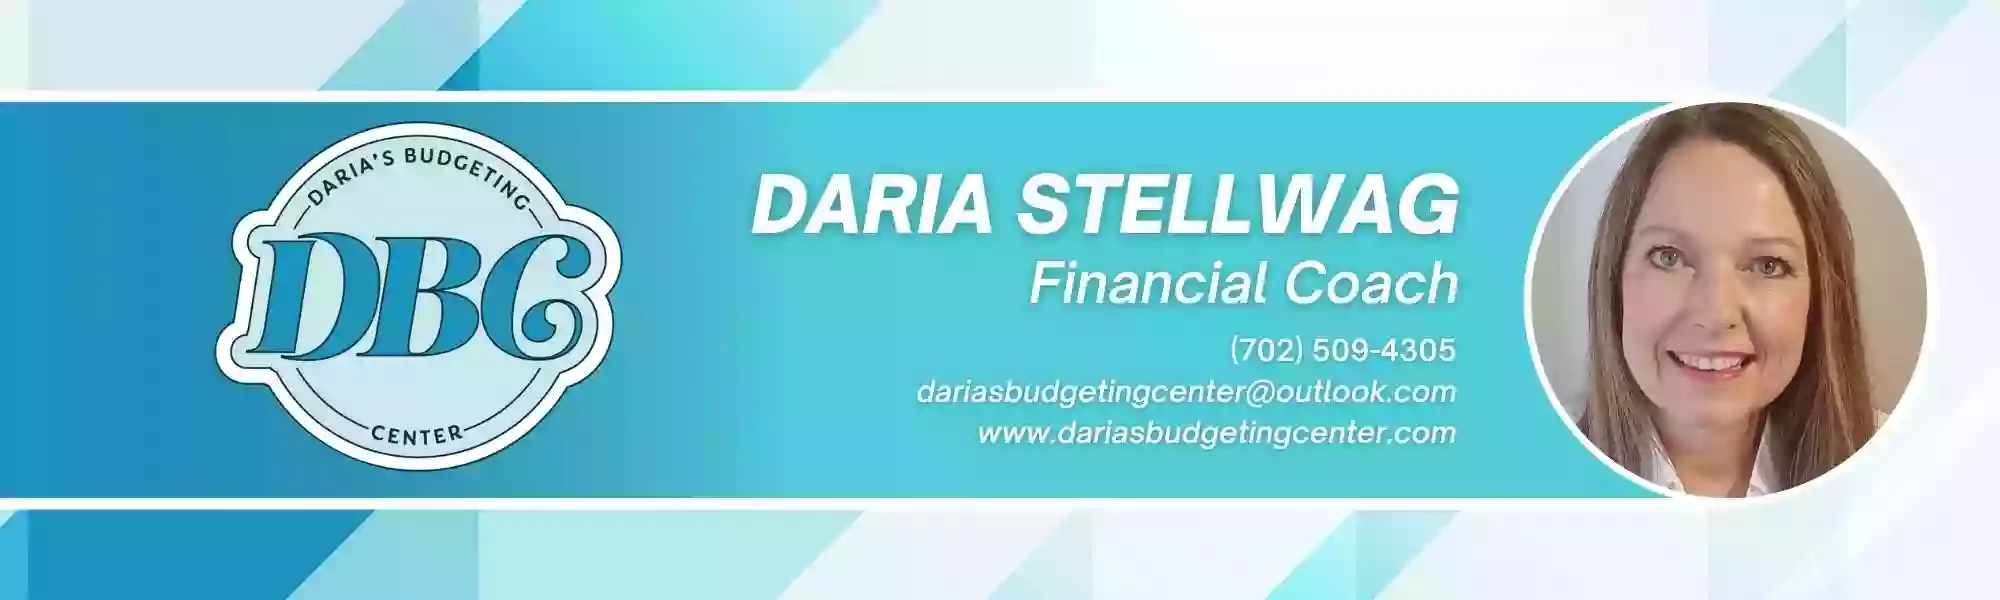 Daria's Budgeting Center